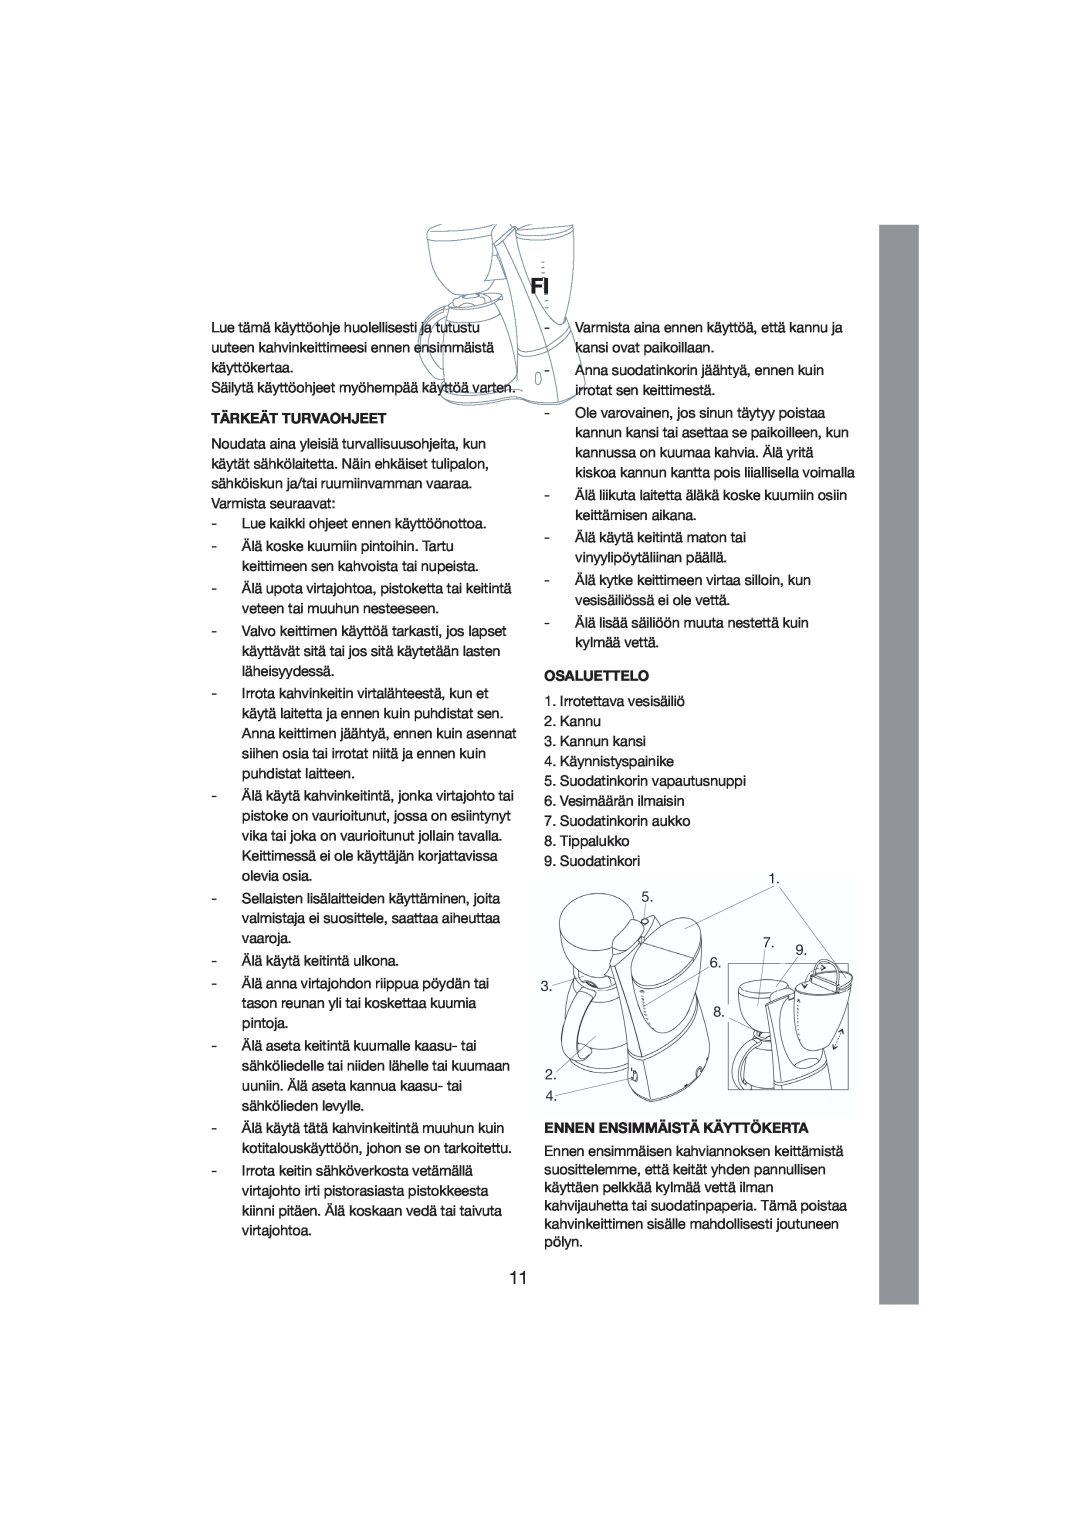 Melissa 245-022 manual Tärkeät Turvaohjeet, Osaluettelo, Ennen Ensimmäistä Käyttökerta 